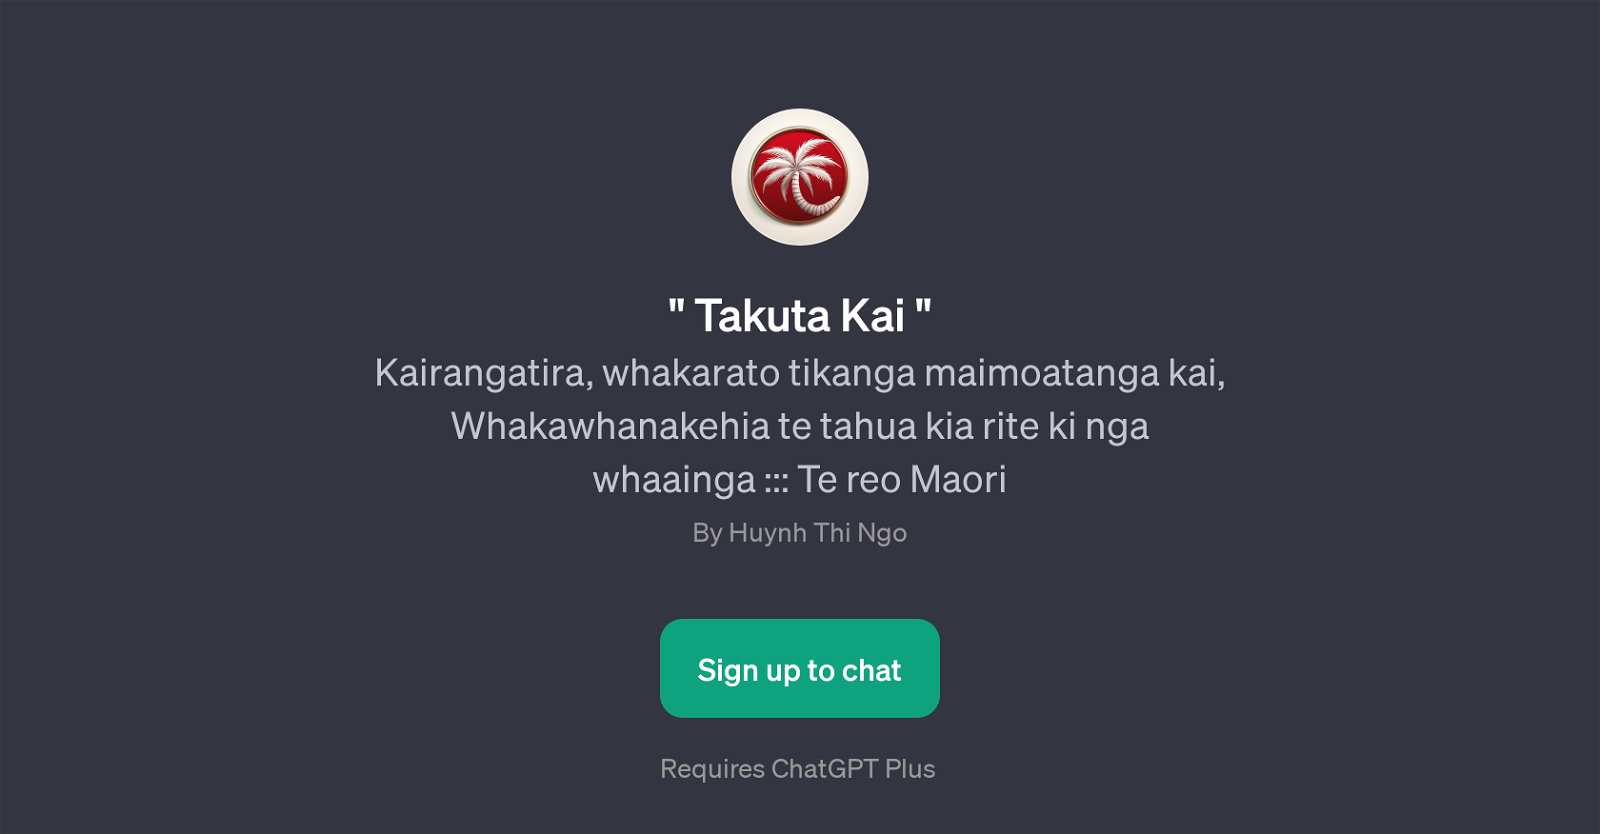 Takuta Kai website